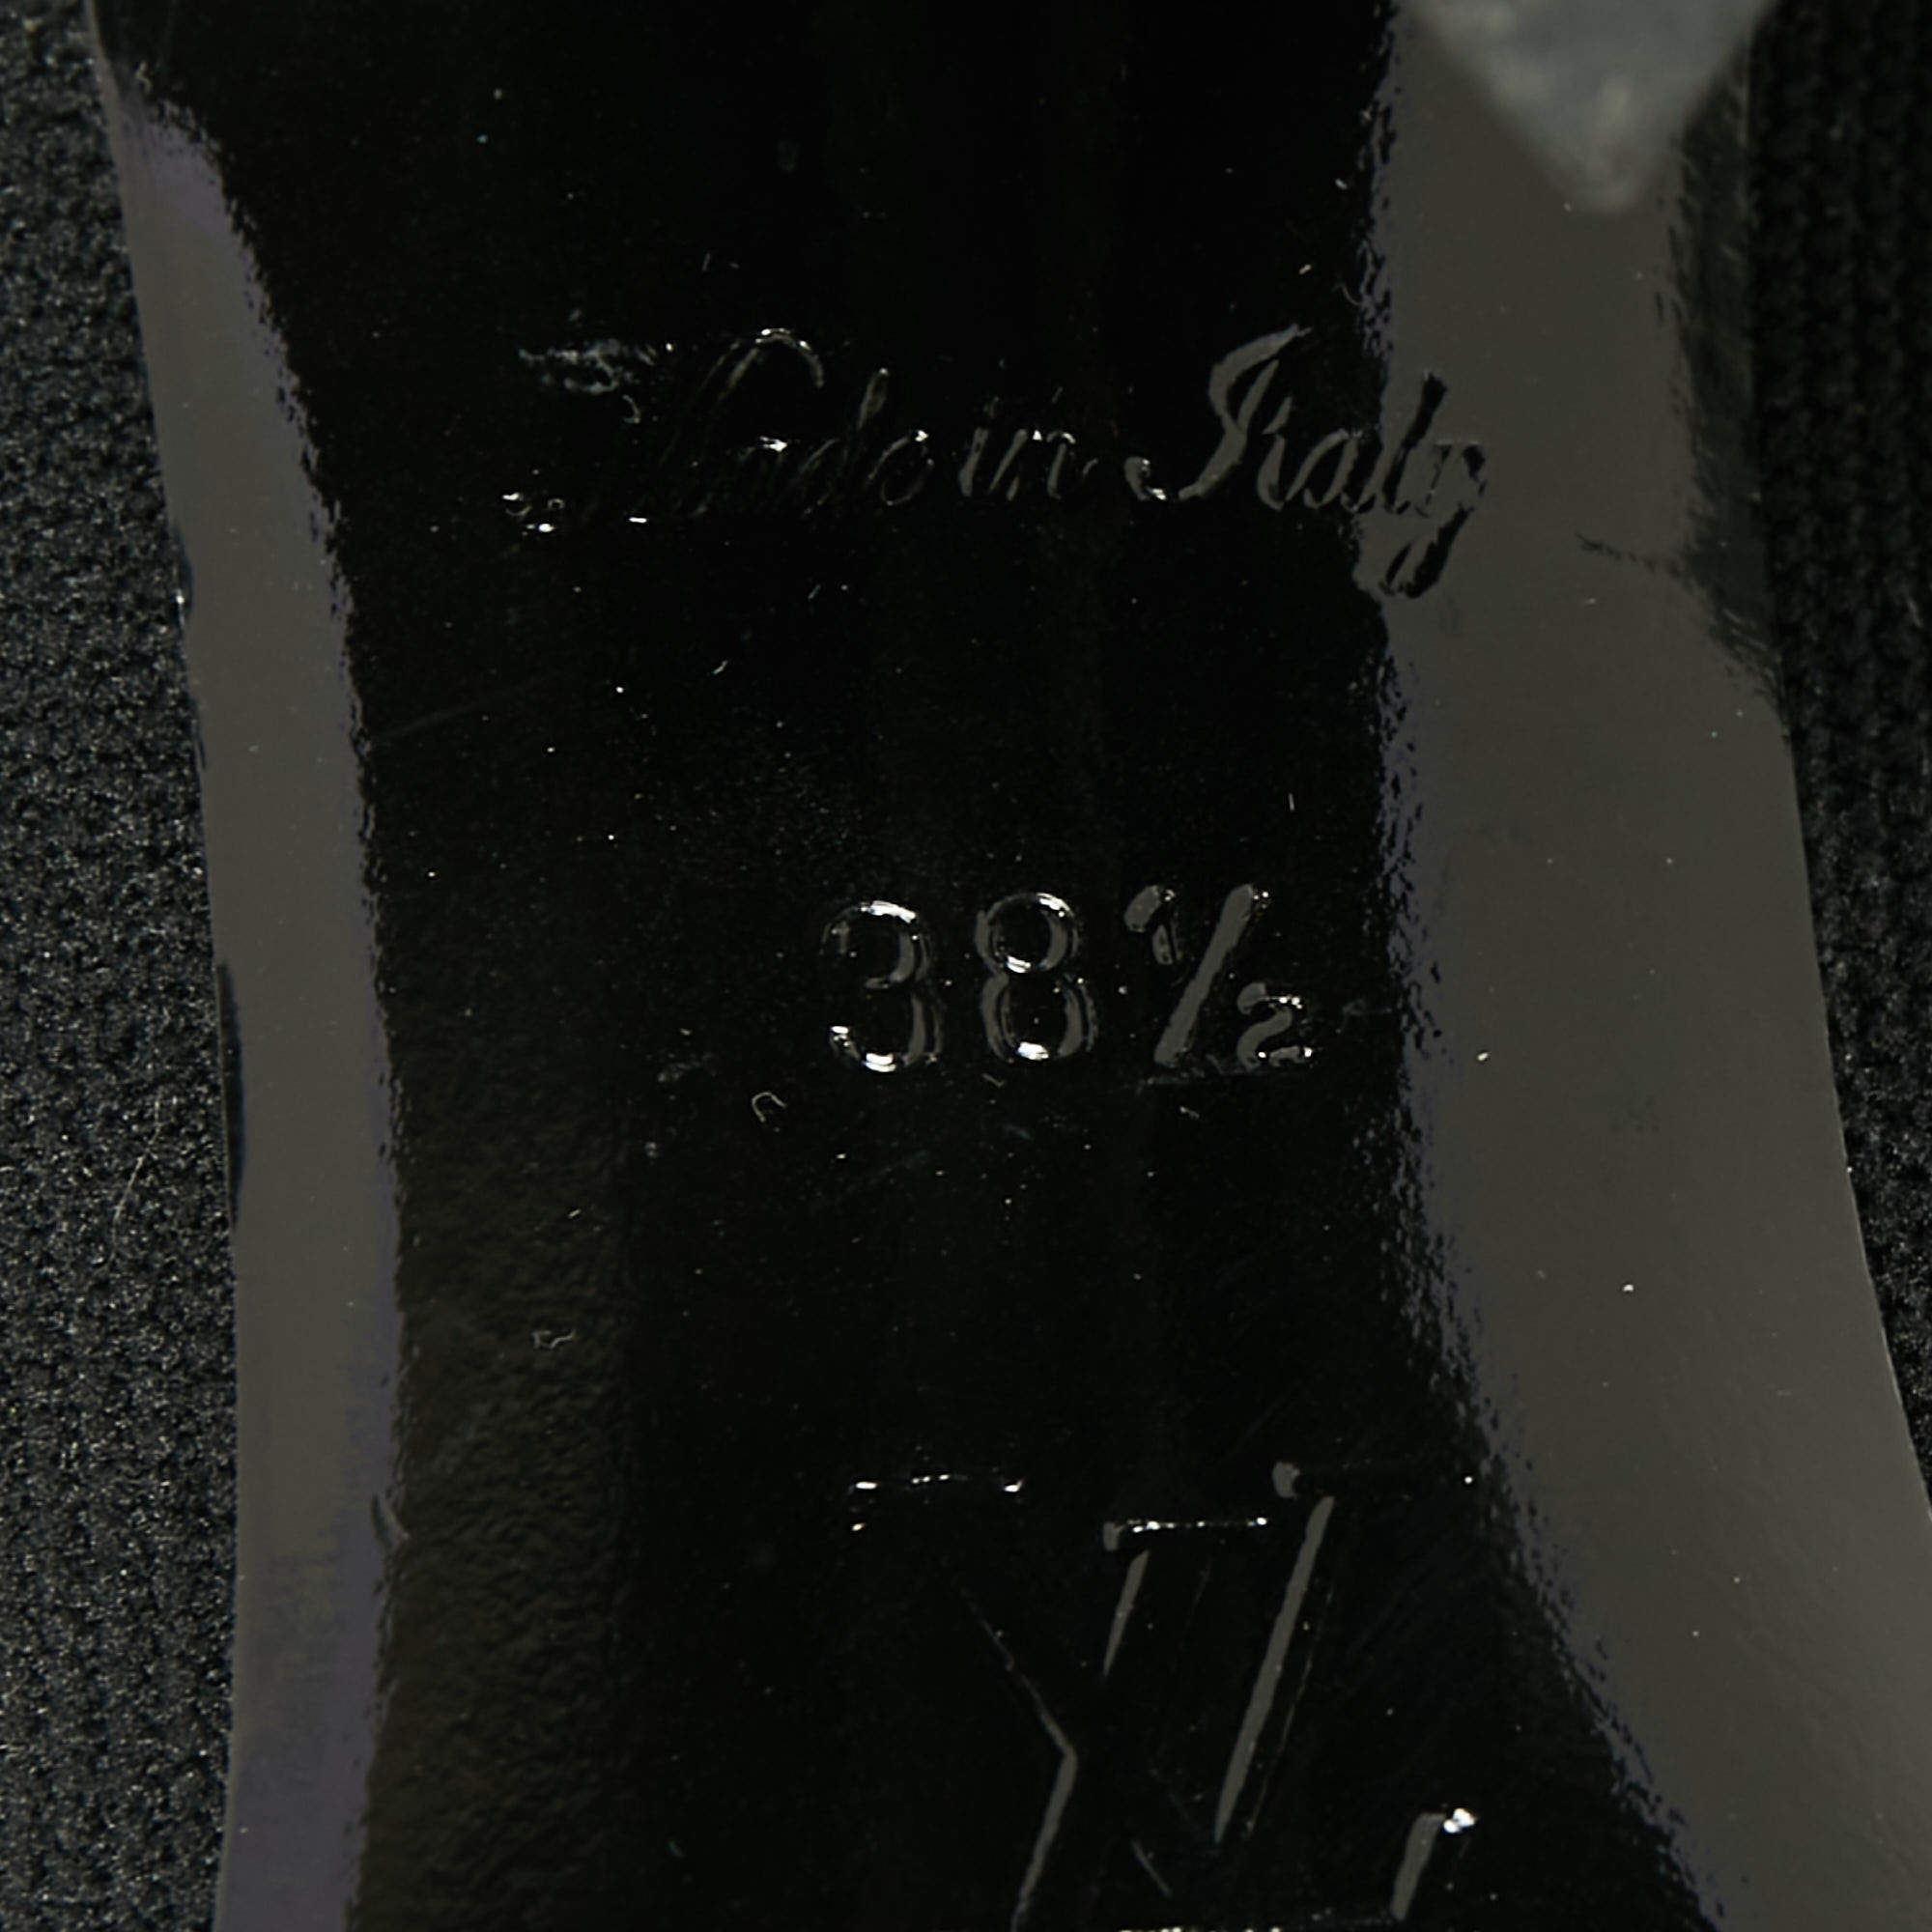 Louis Vuitton Black Knit Fabric LV Black Heart Sock Ankle Boots Size 38.5 Louis  Vuitton